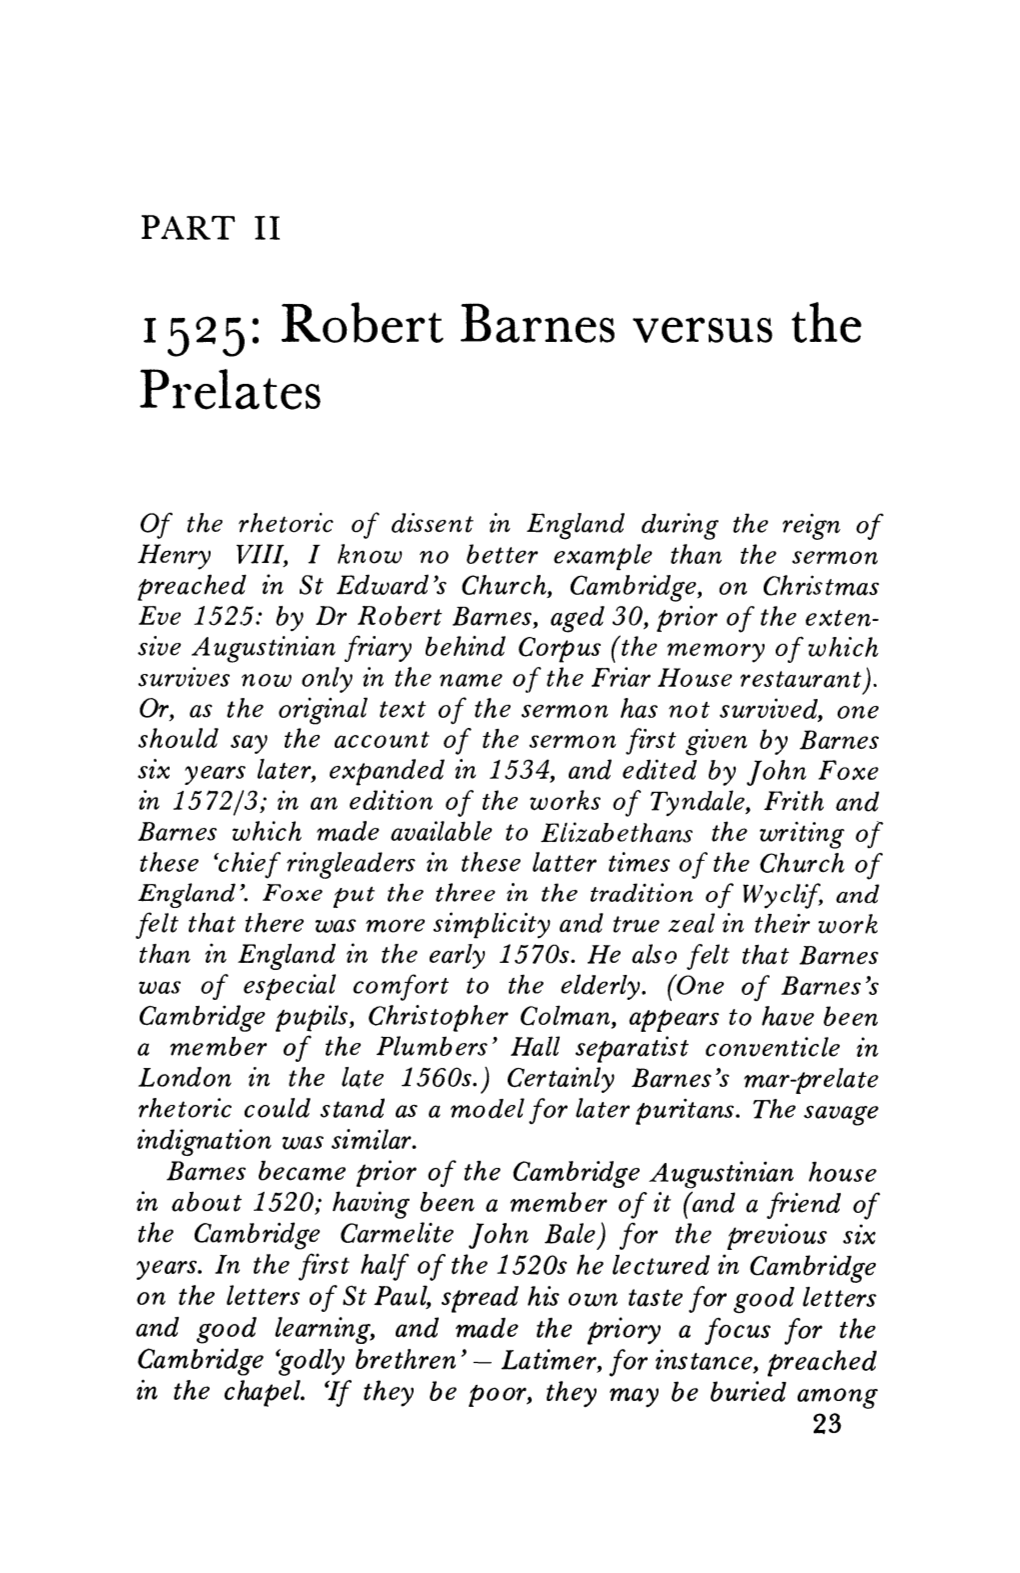 1525: Robert Barnes Versus the Prelates